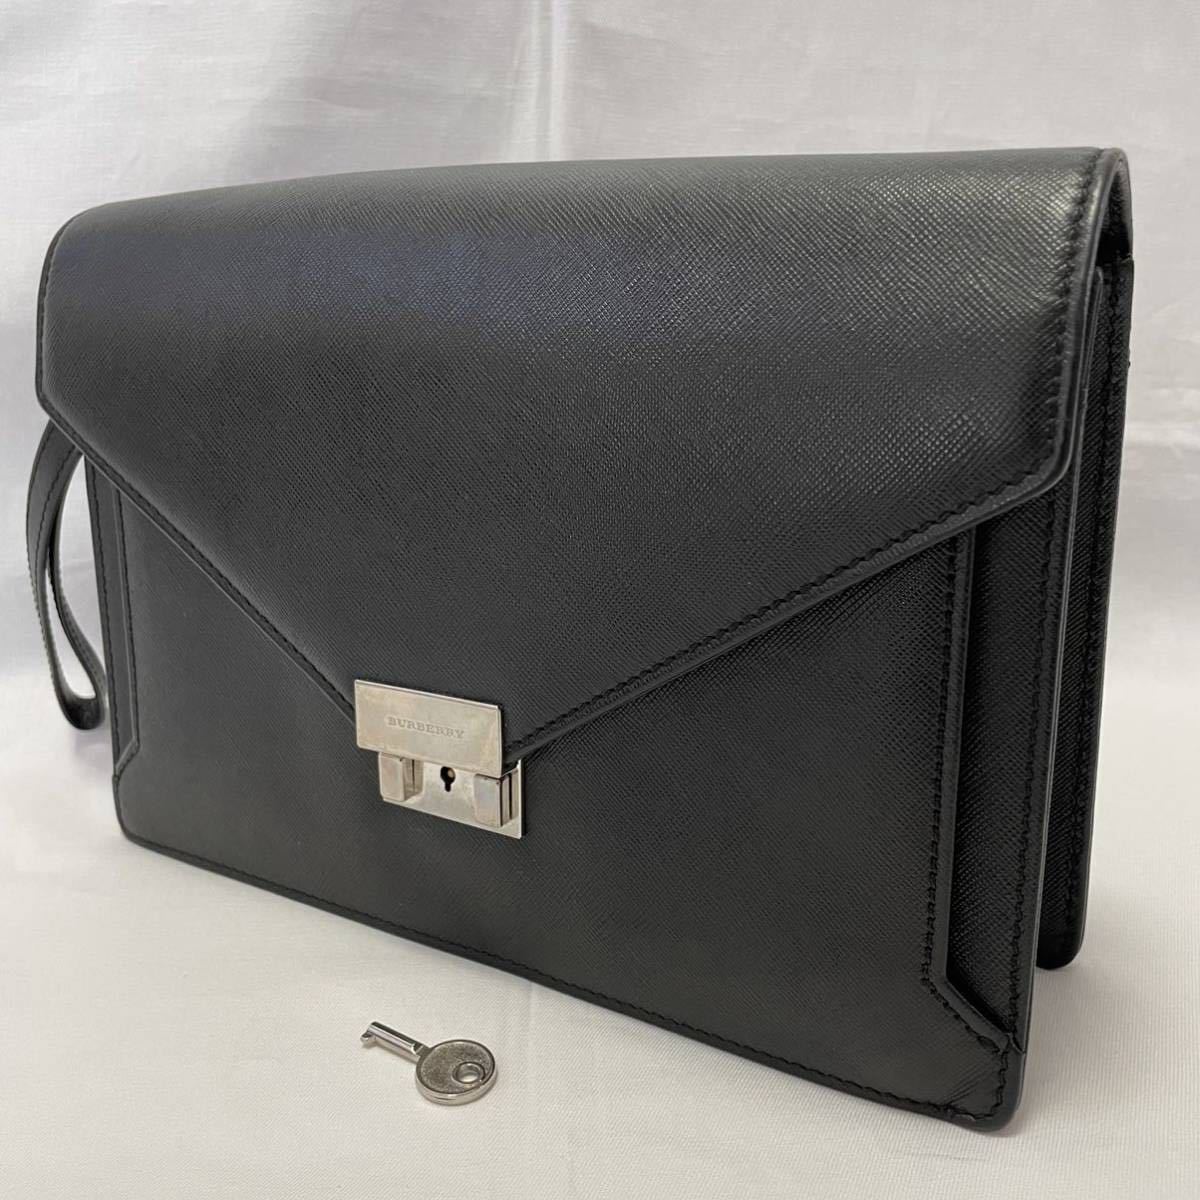 BURBERRY Burberry клатч ручная сумочка кожа кожа ключ имеется серебряный металлические принадлежности черный чёрный 